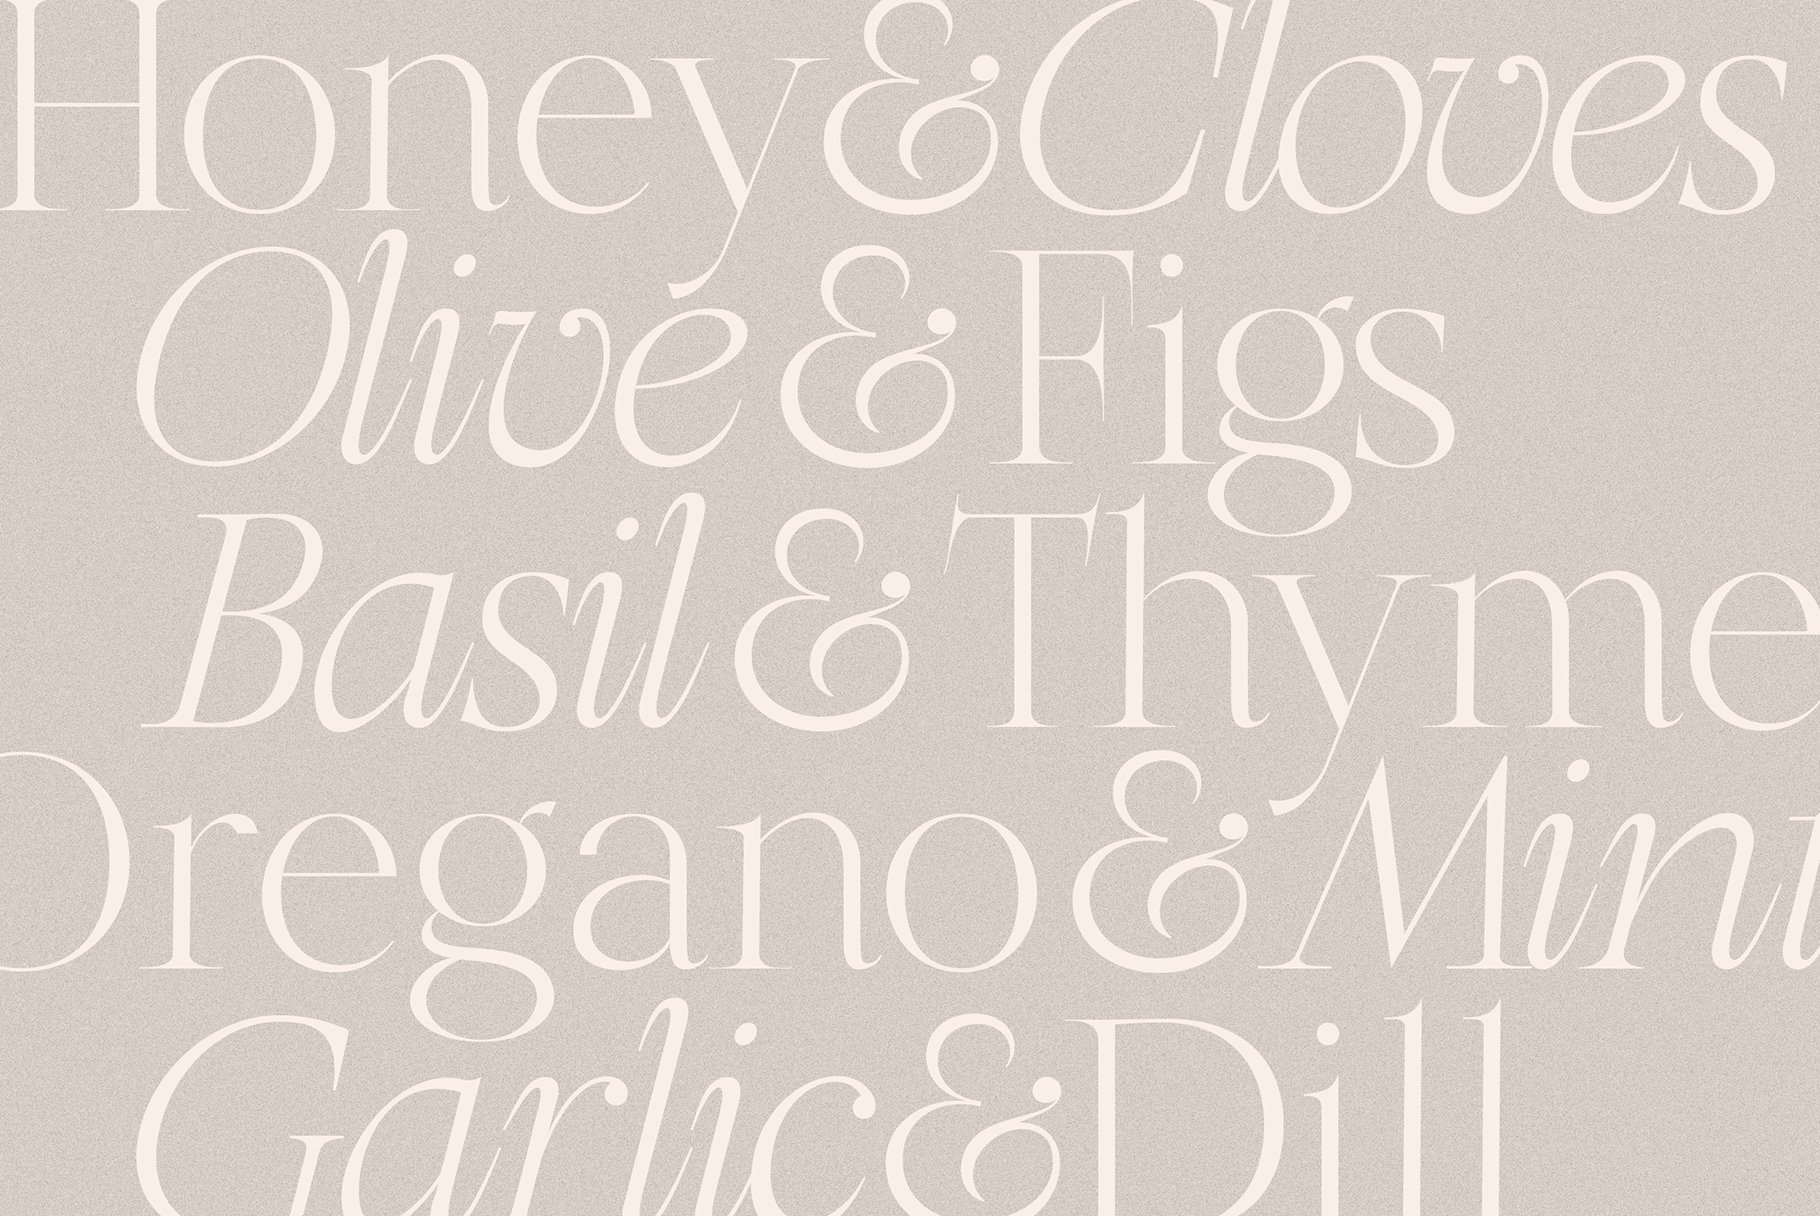 Olive & Figs font for food menu 